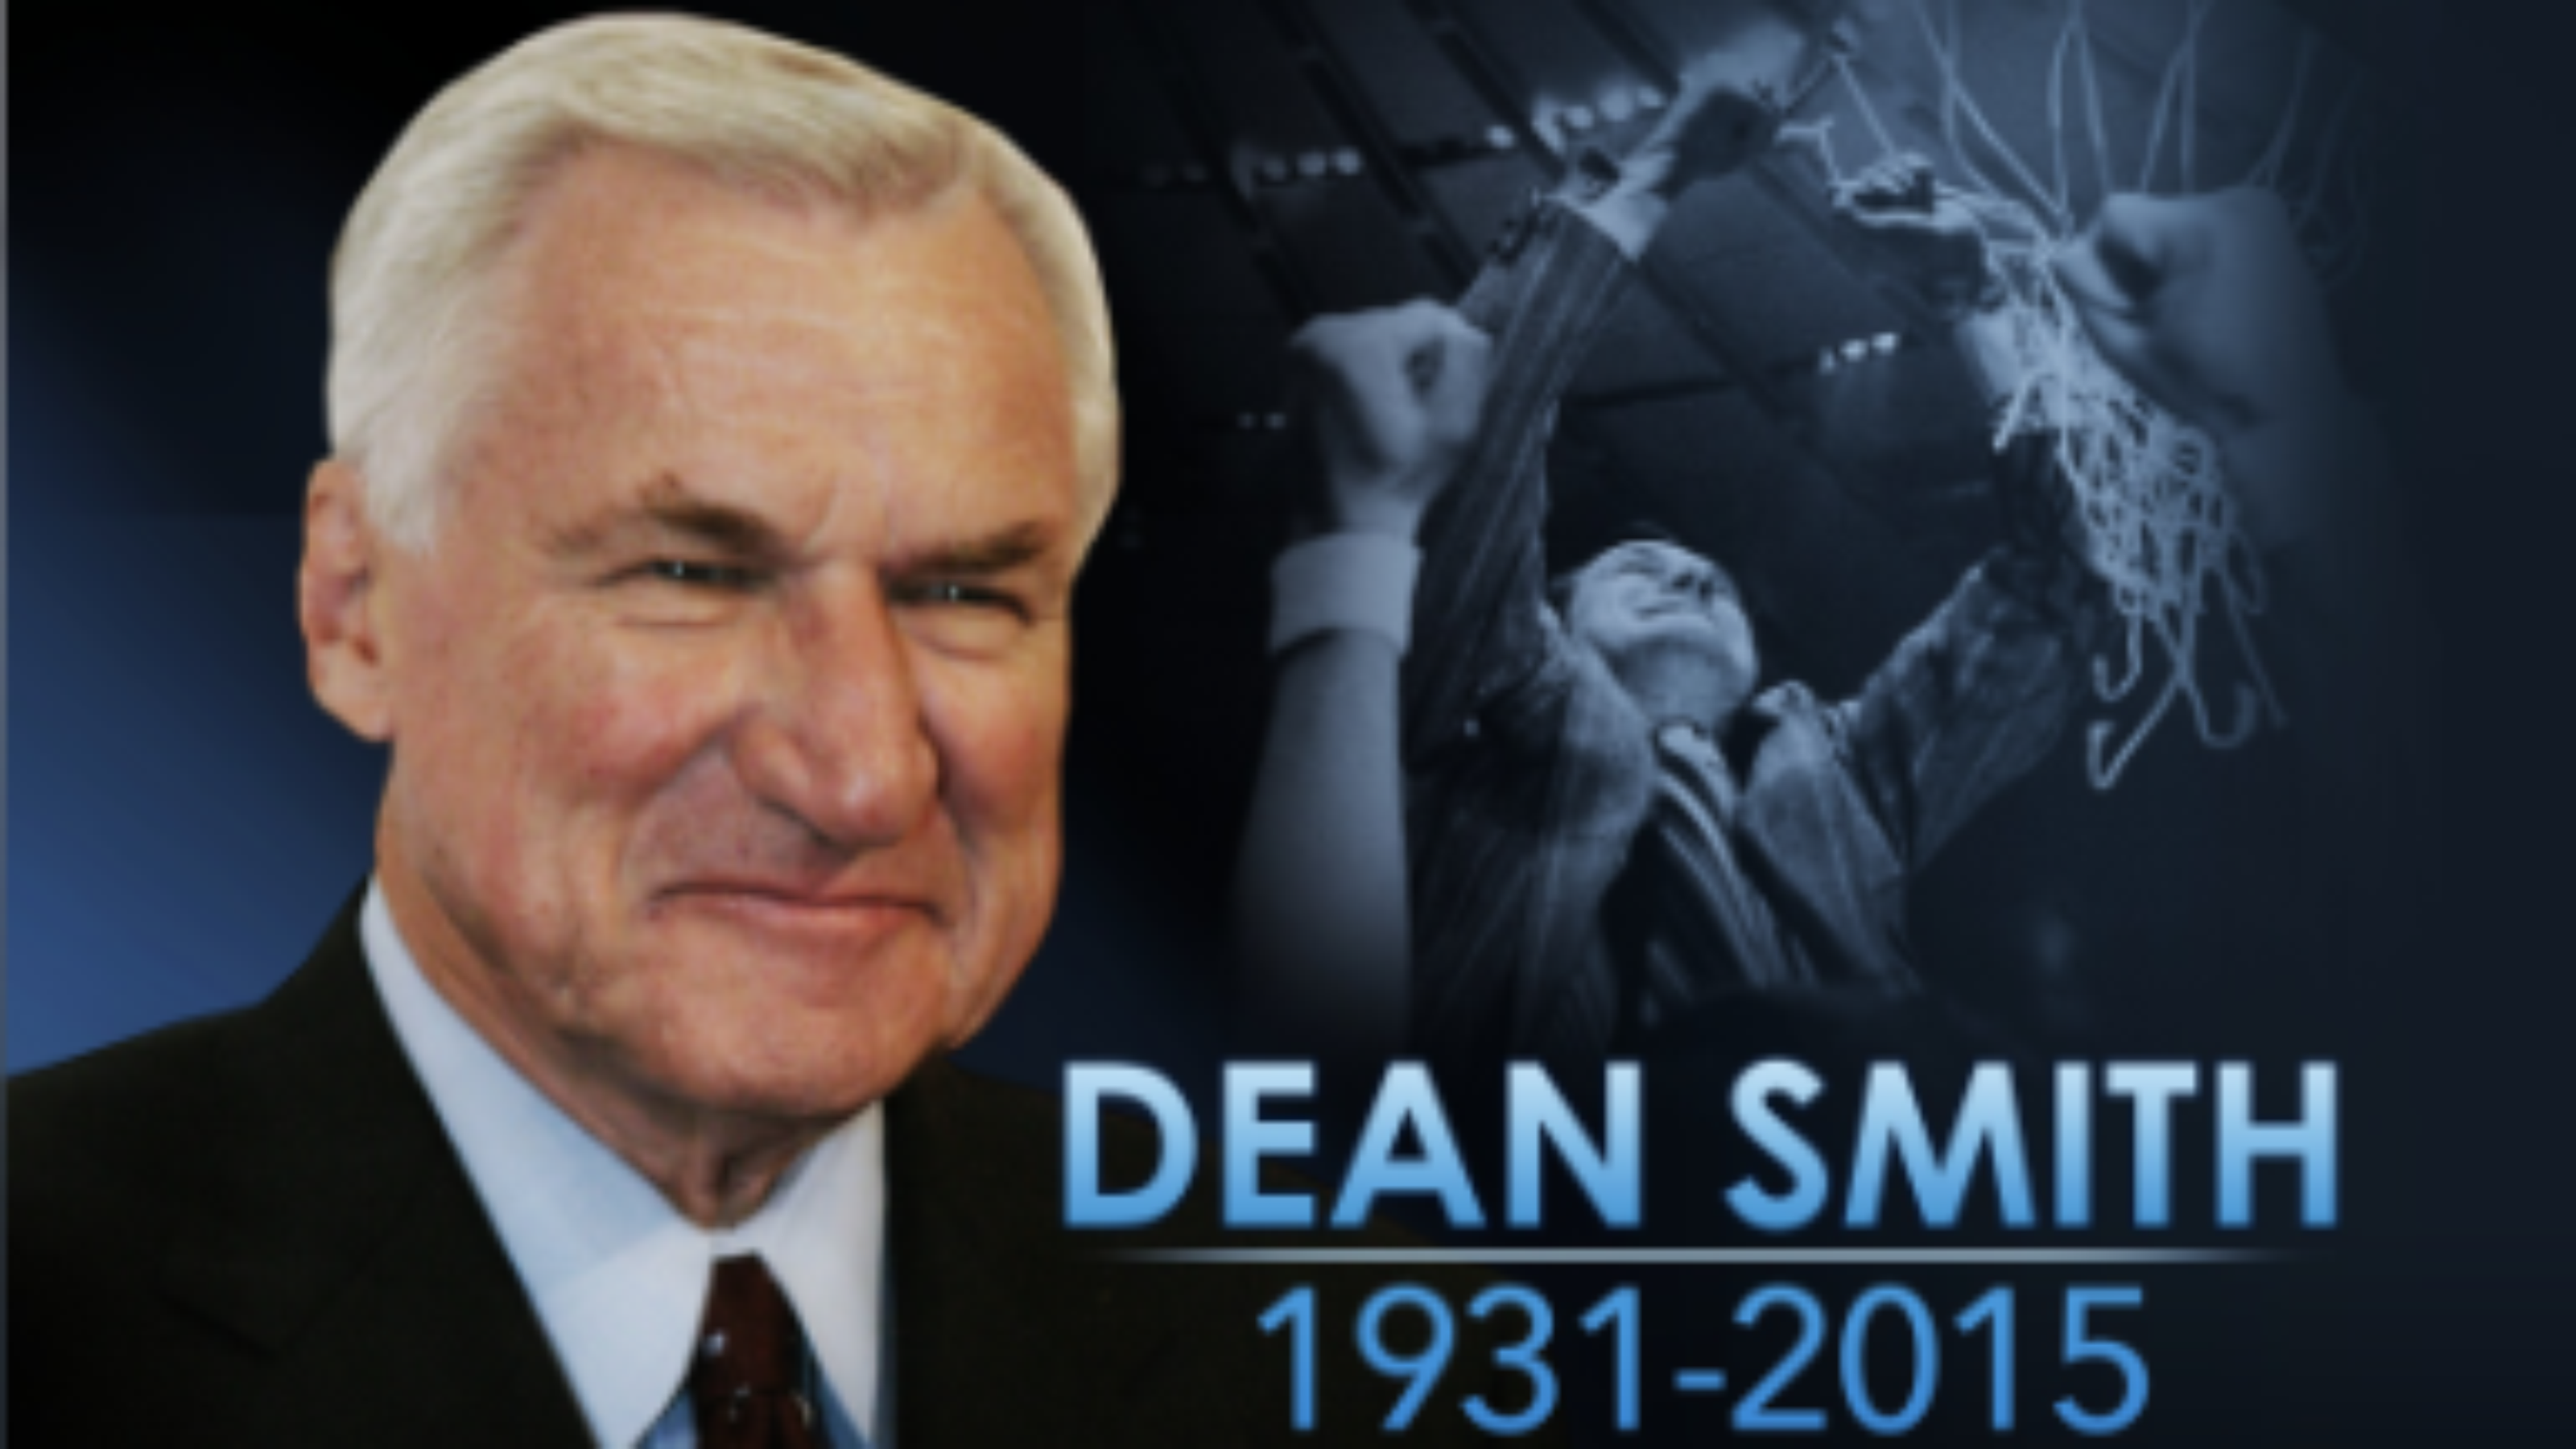 Dean Smith Basketball Quotes. QuotesGram